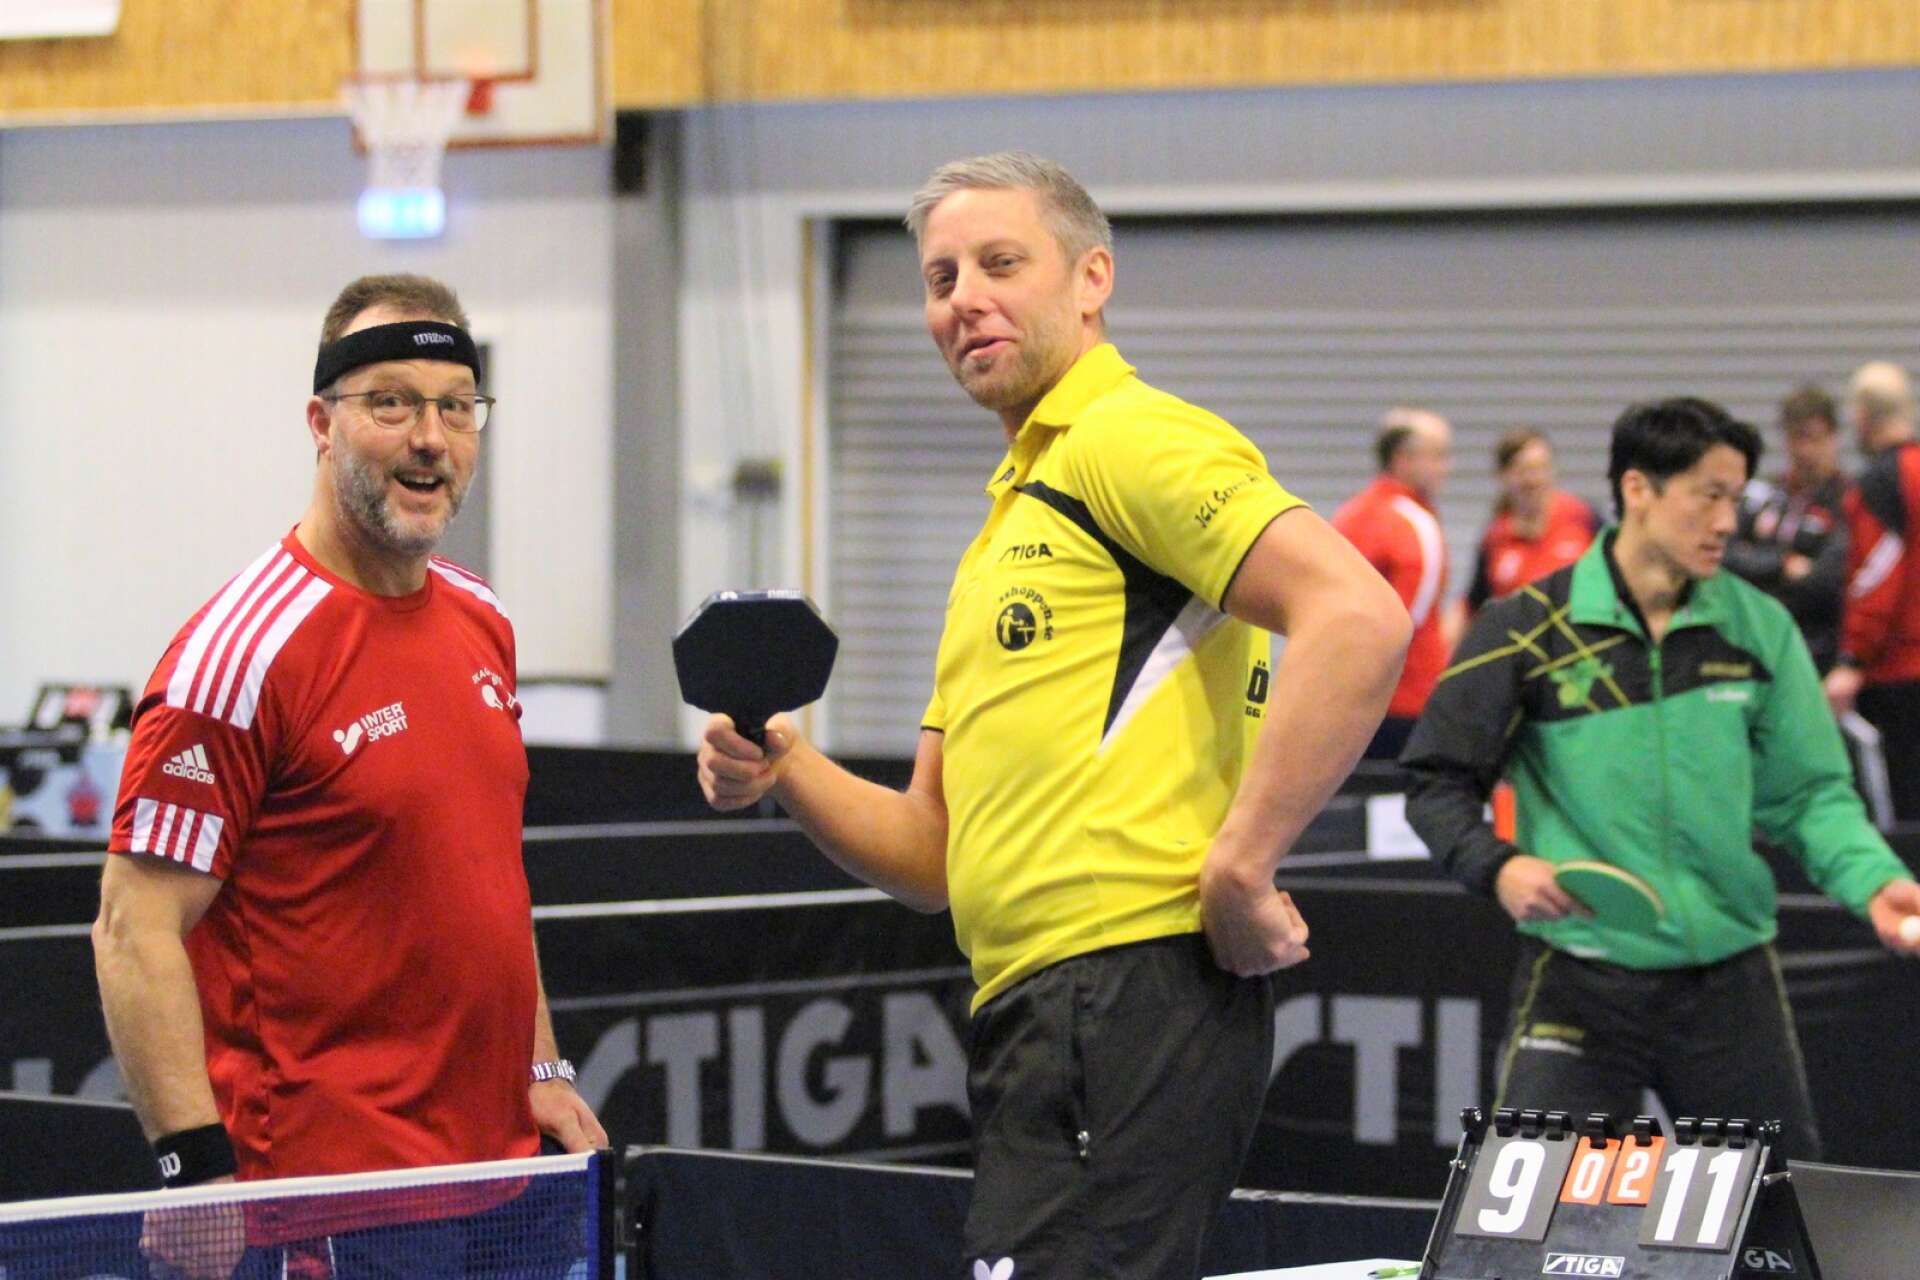 Skagersviks spelare Per Almgren, till vänster, och Mariestadsspelaren Per Williamsson var båda med under helgens sammandrag i division tre. (ARKIVBILD)